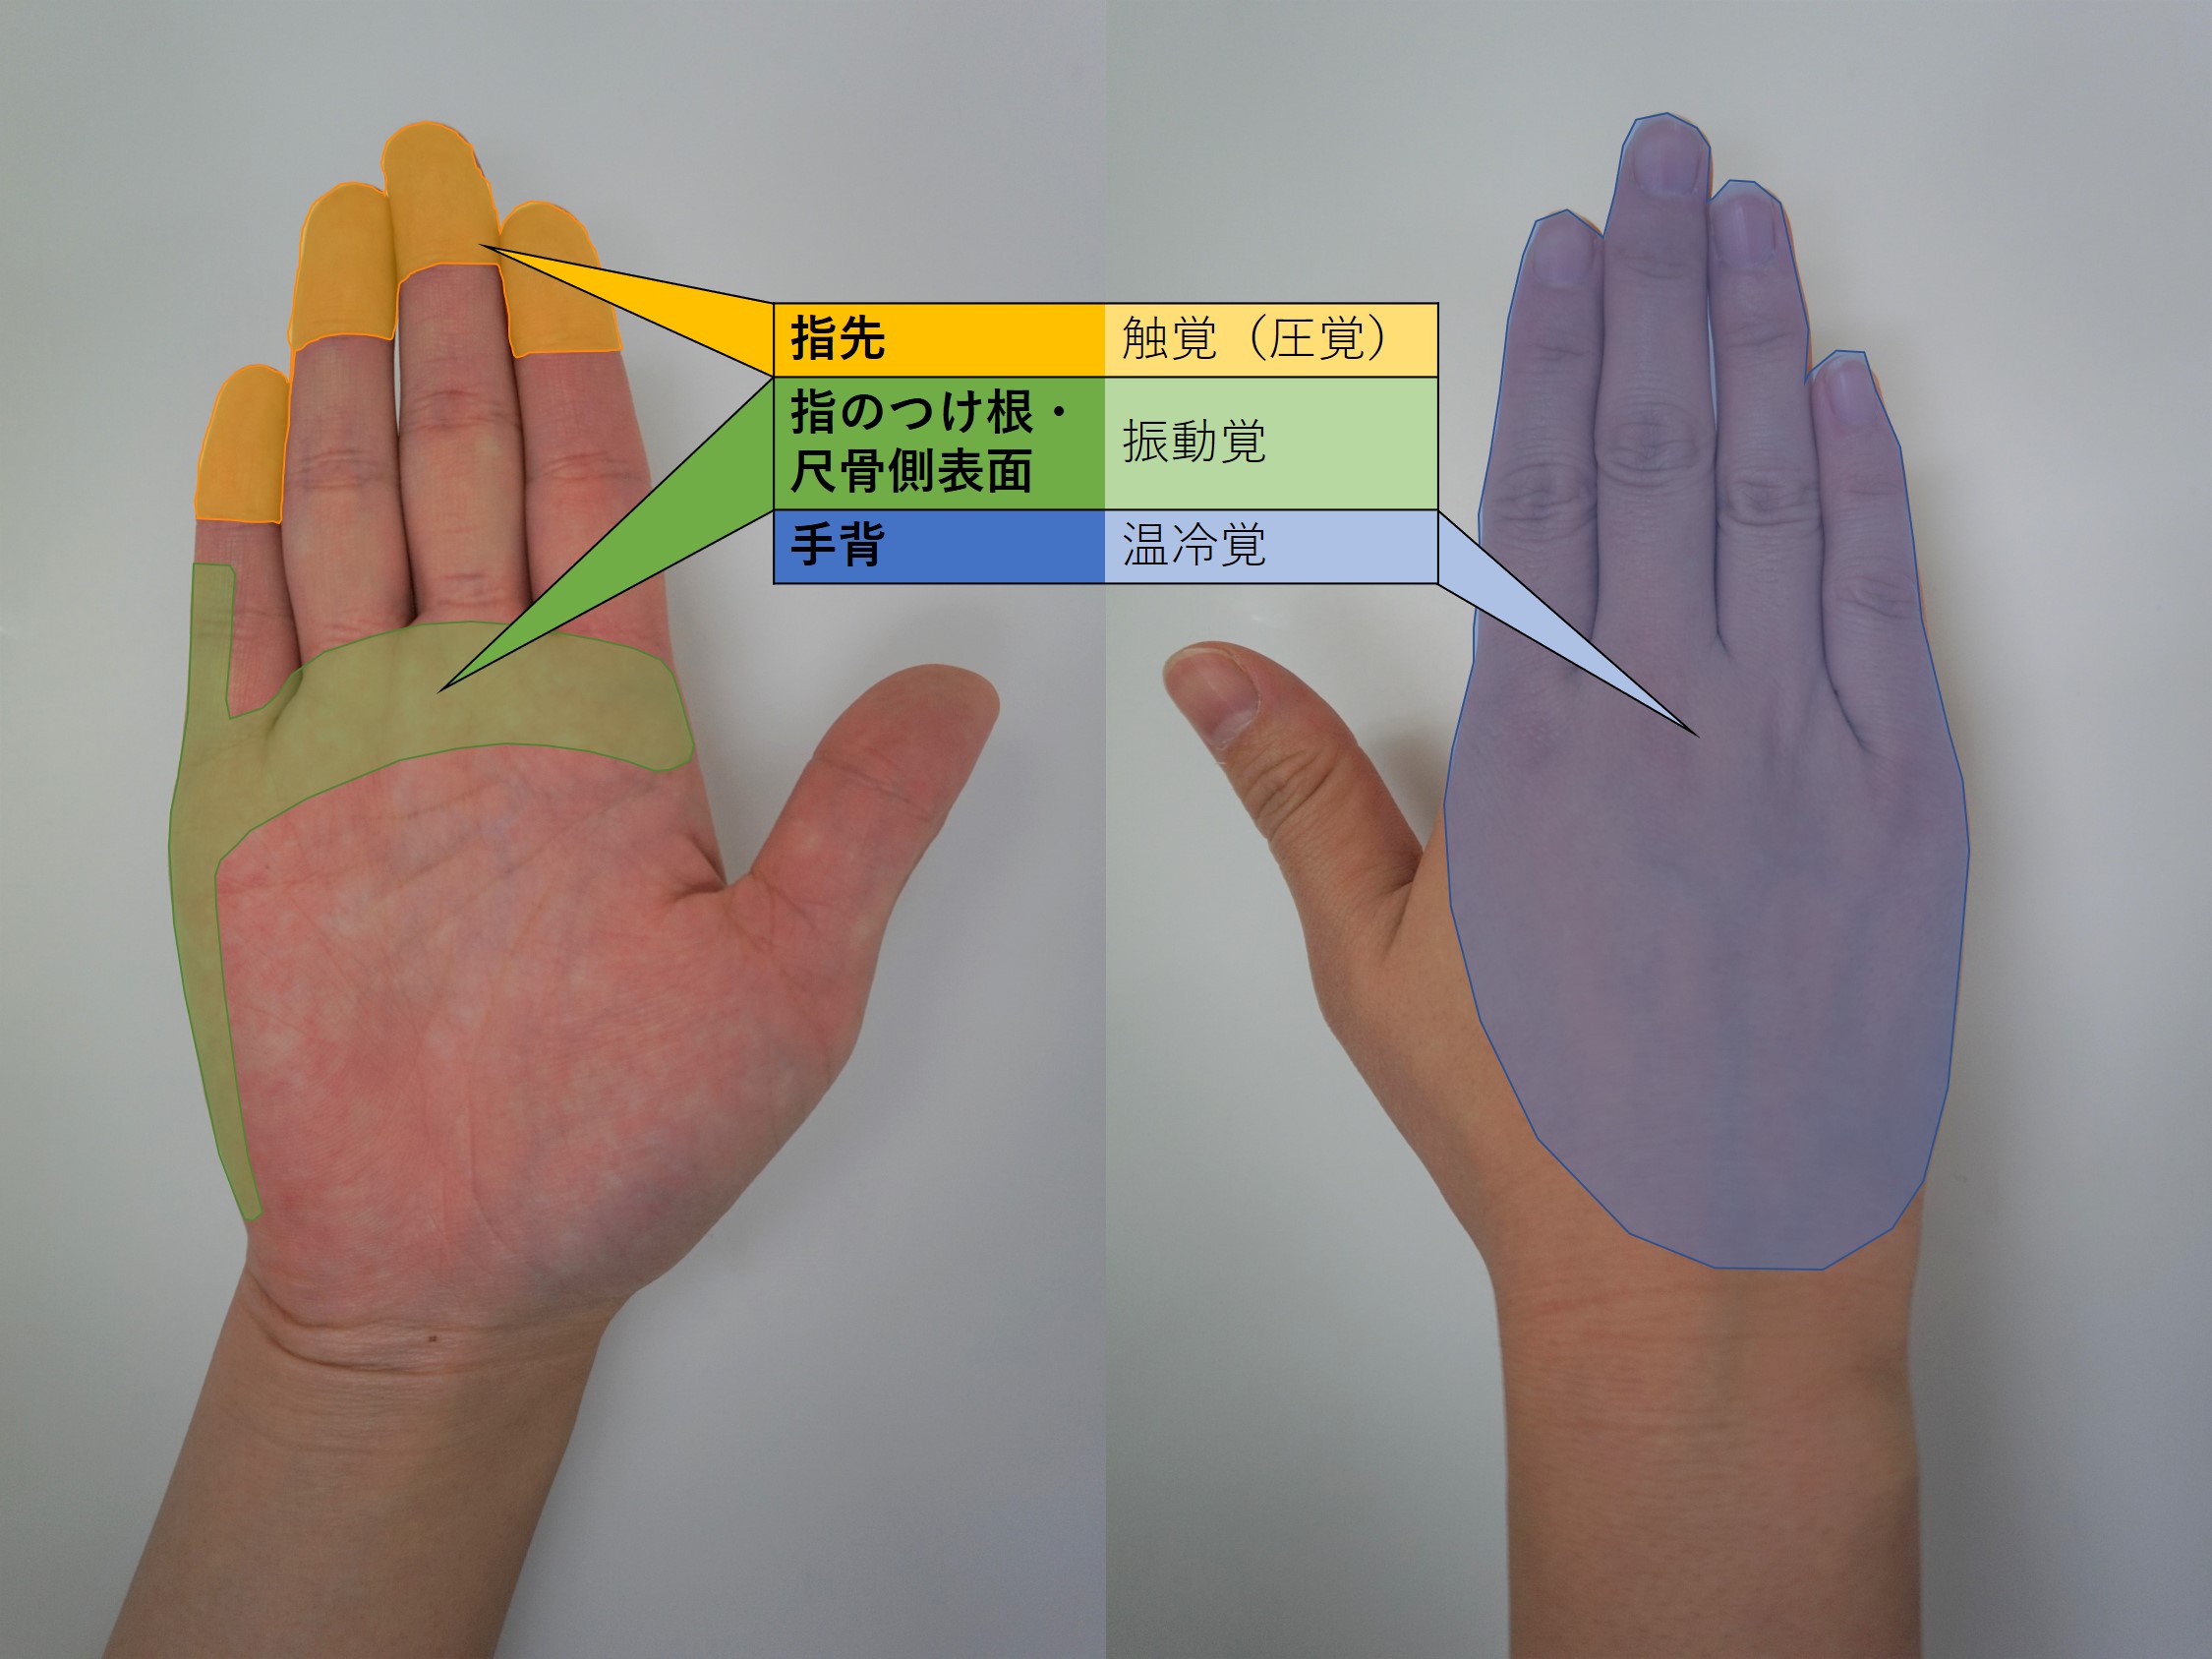 図-概要-触診に用いる手の部位.jpg